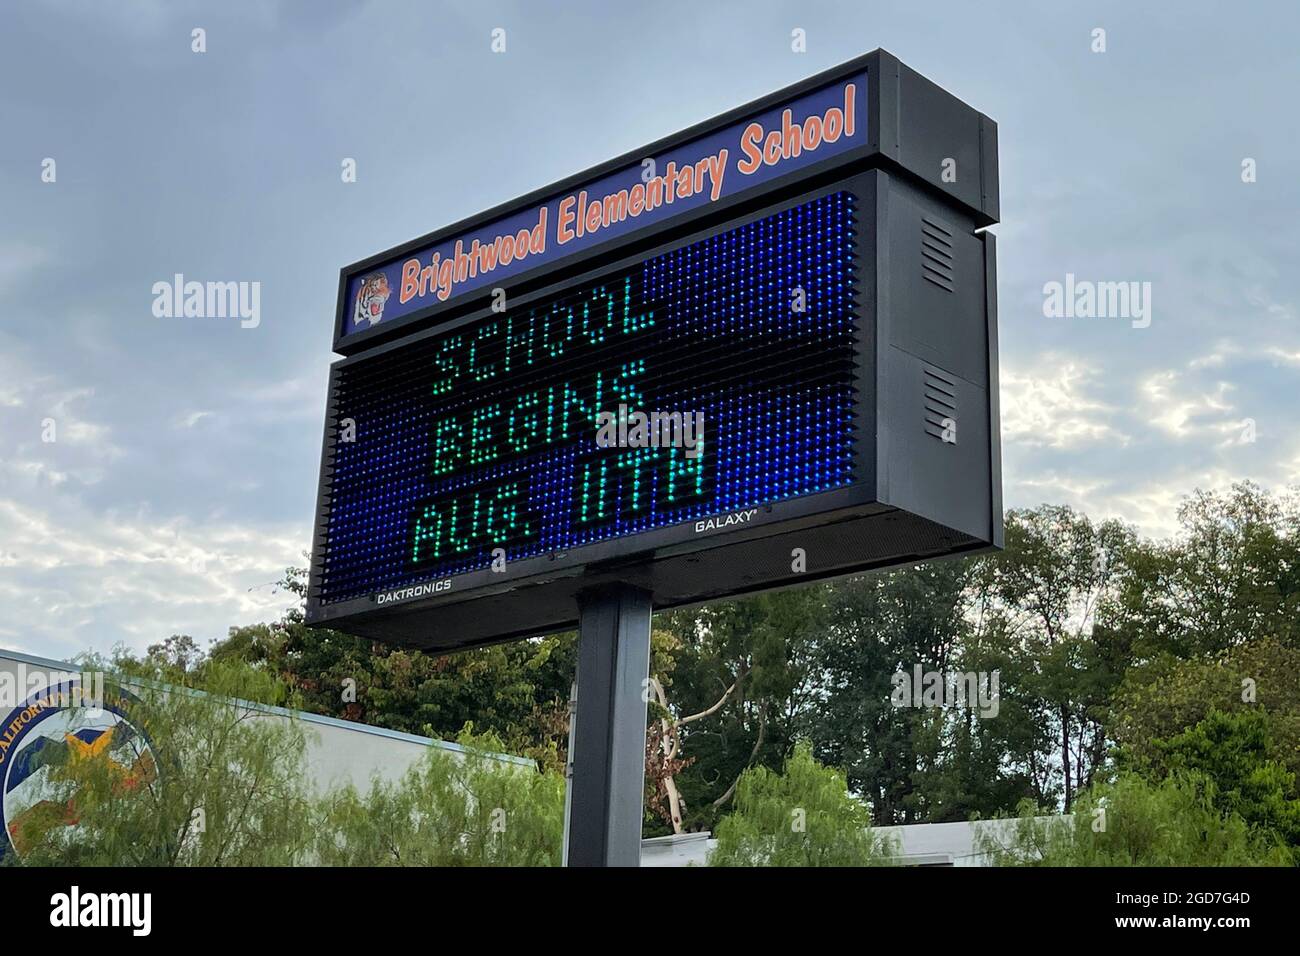 Eine Schule beginnt am 11. August in der Brightwood Elementary School, Mittwoch, den 11. August 2021, in Monterey Park, Kalif. Stockfoto